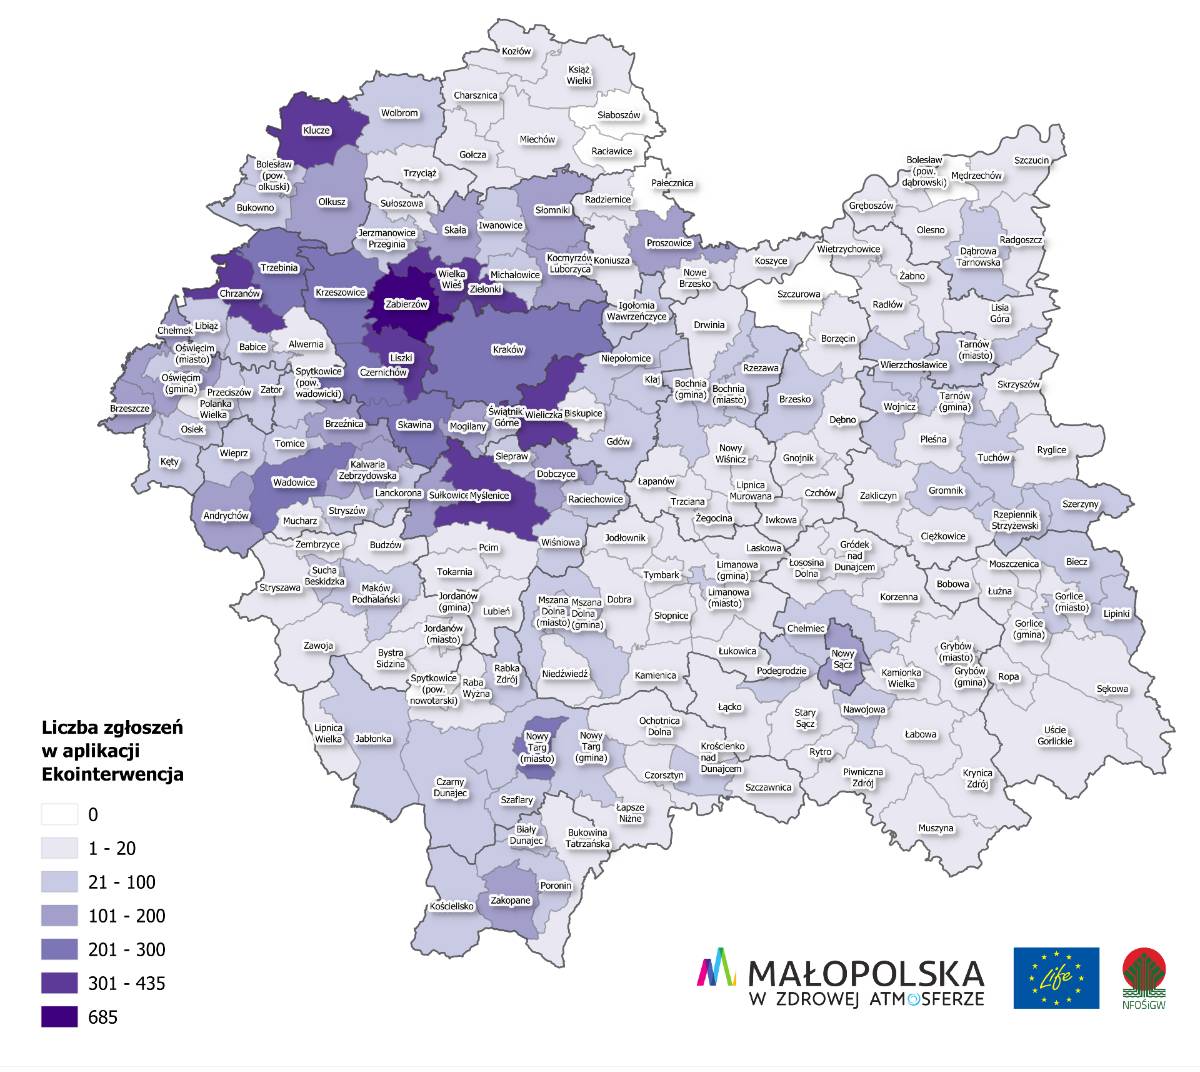 Mapka obrazująca liczbę osób uprawnionych do kontroli w małopolskich gminach